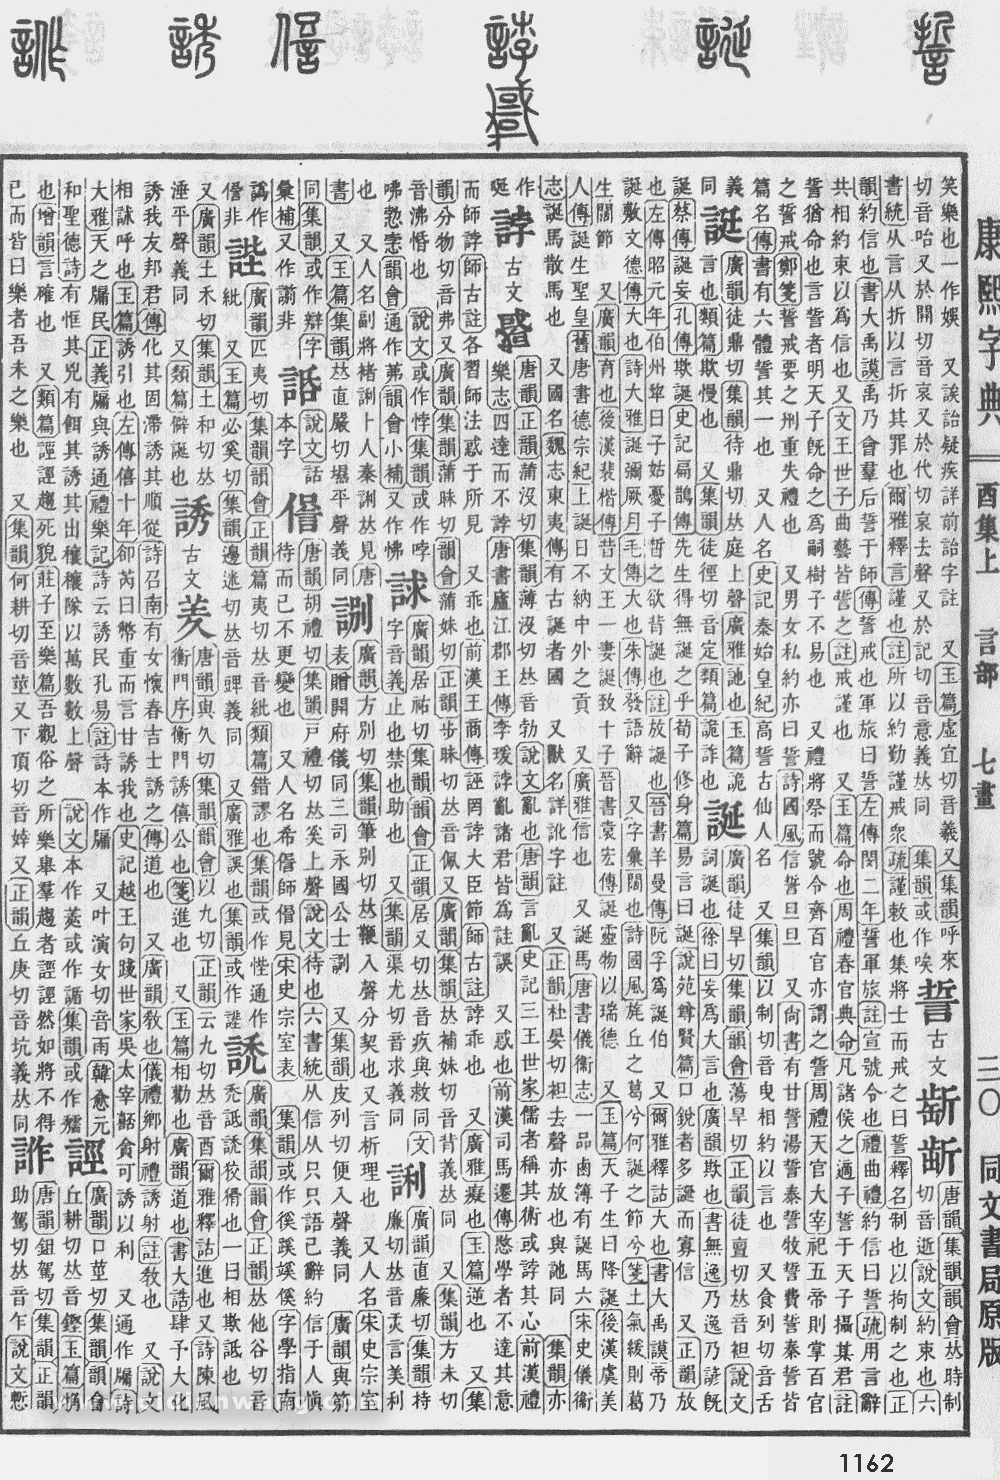 康熙字典掃描版第1162頁